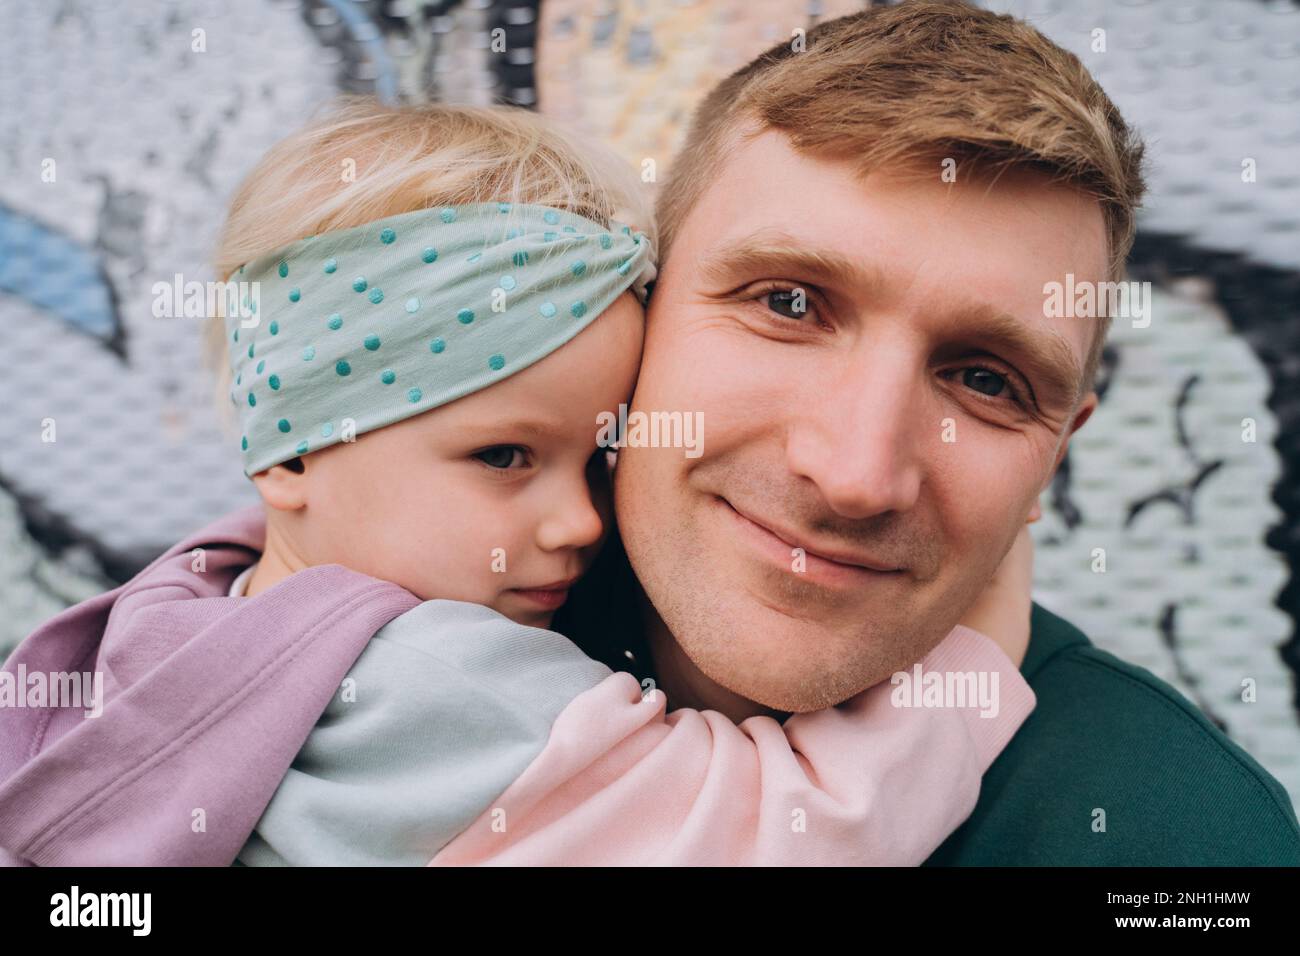 Primo piano ritratto di padre e figlia in felpe con cappuccio, colori pastello Foto Stock